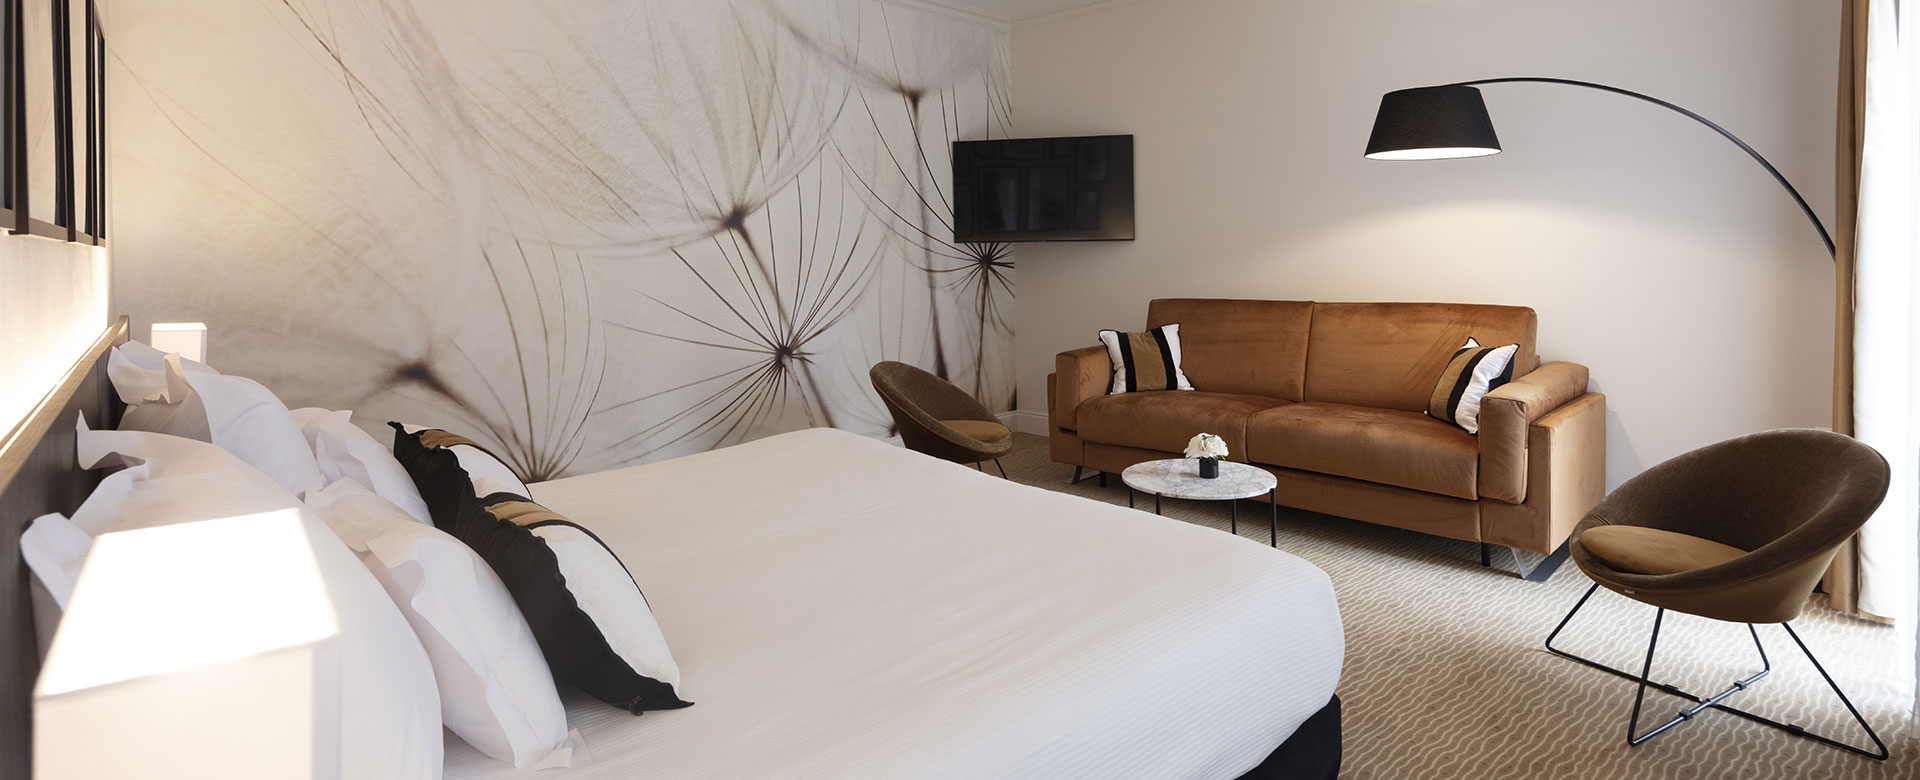 Habitaciones Junior Suite en Palmyra Golf, hotel de 4 estrellas en Cap d’Agde, con sofá cama